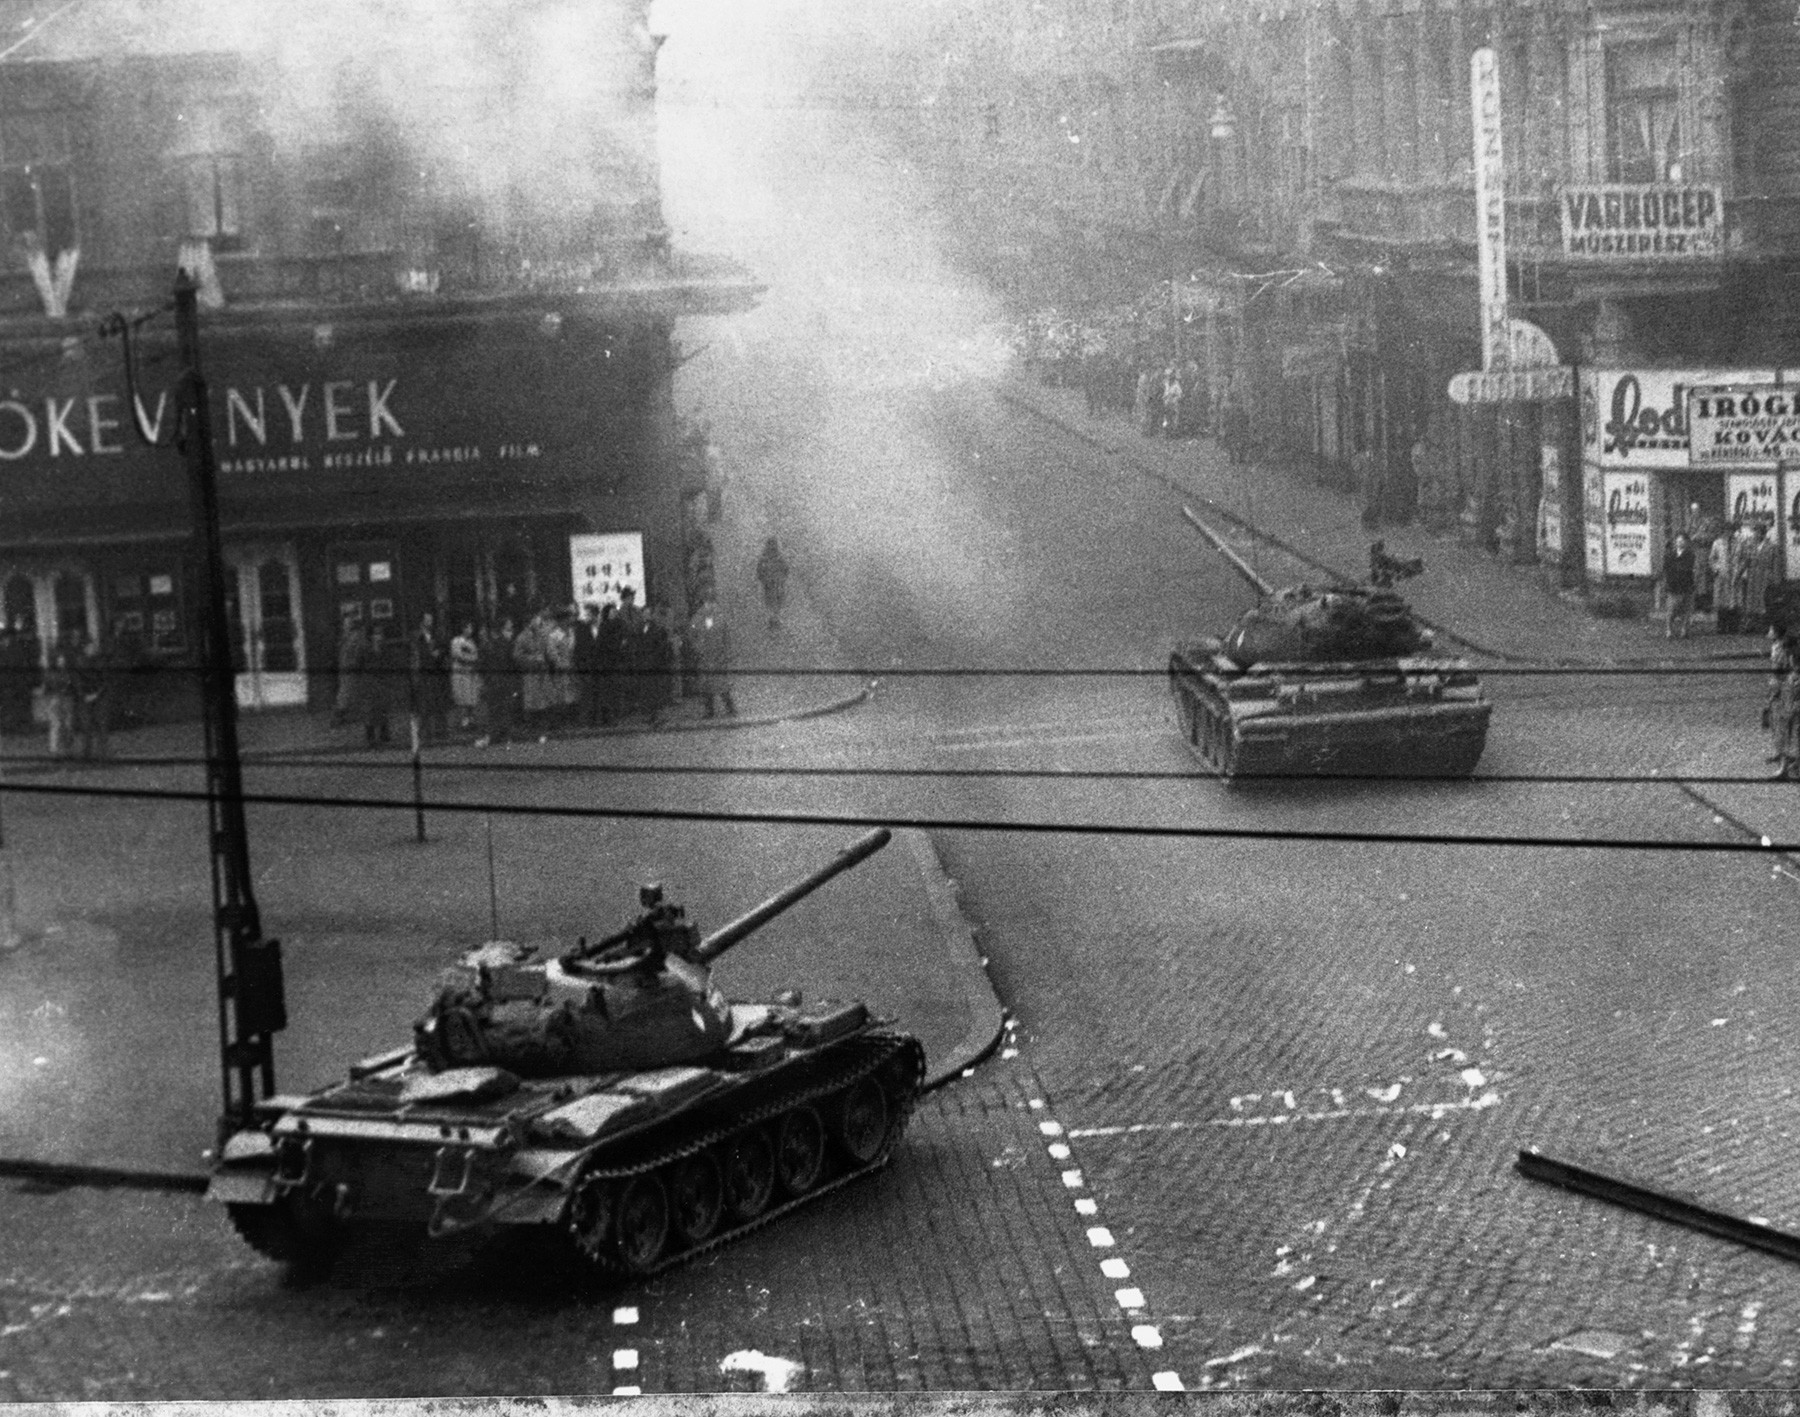 Sovjetski tanki v Budimpešti dušijo protisovjetski upor, 1956